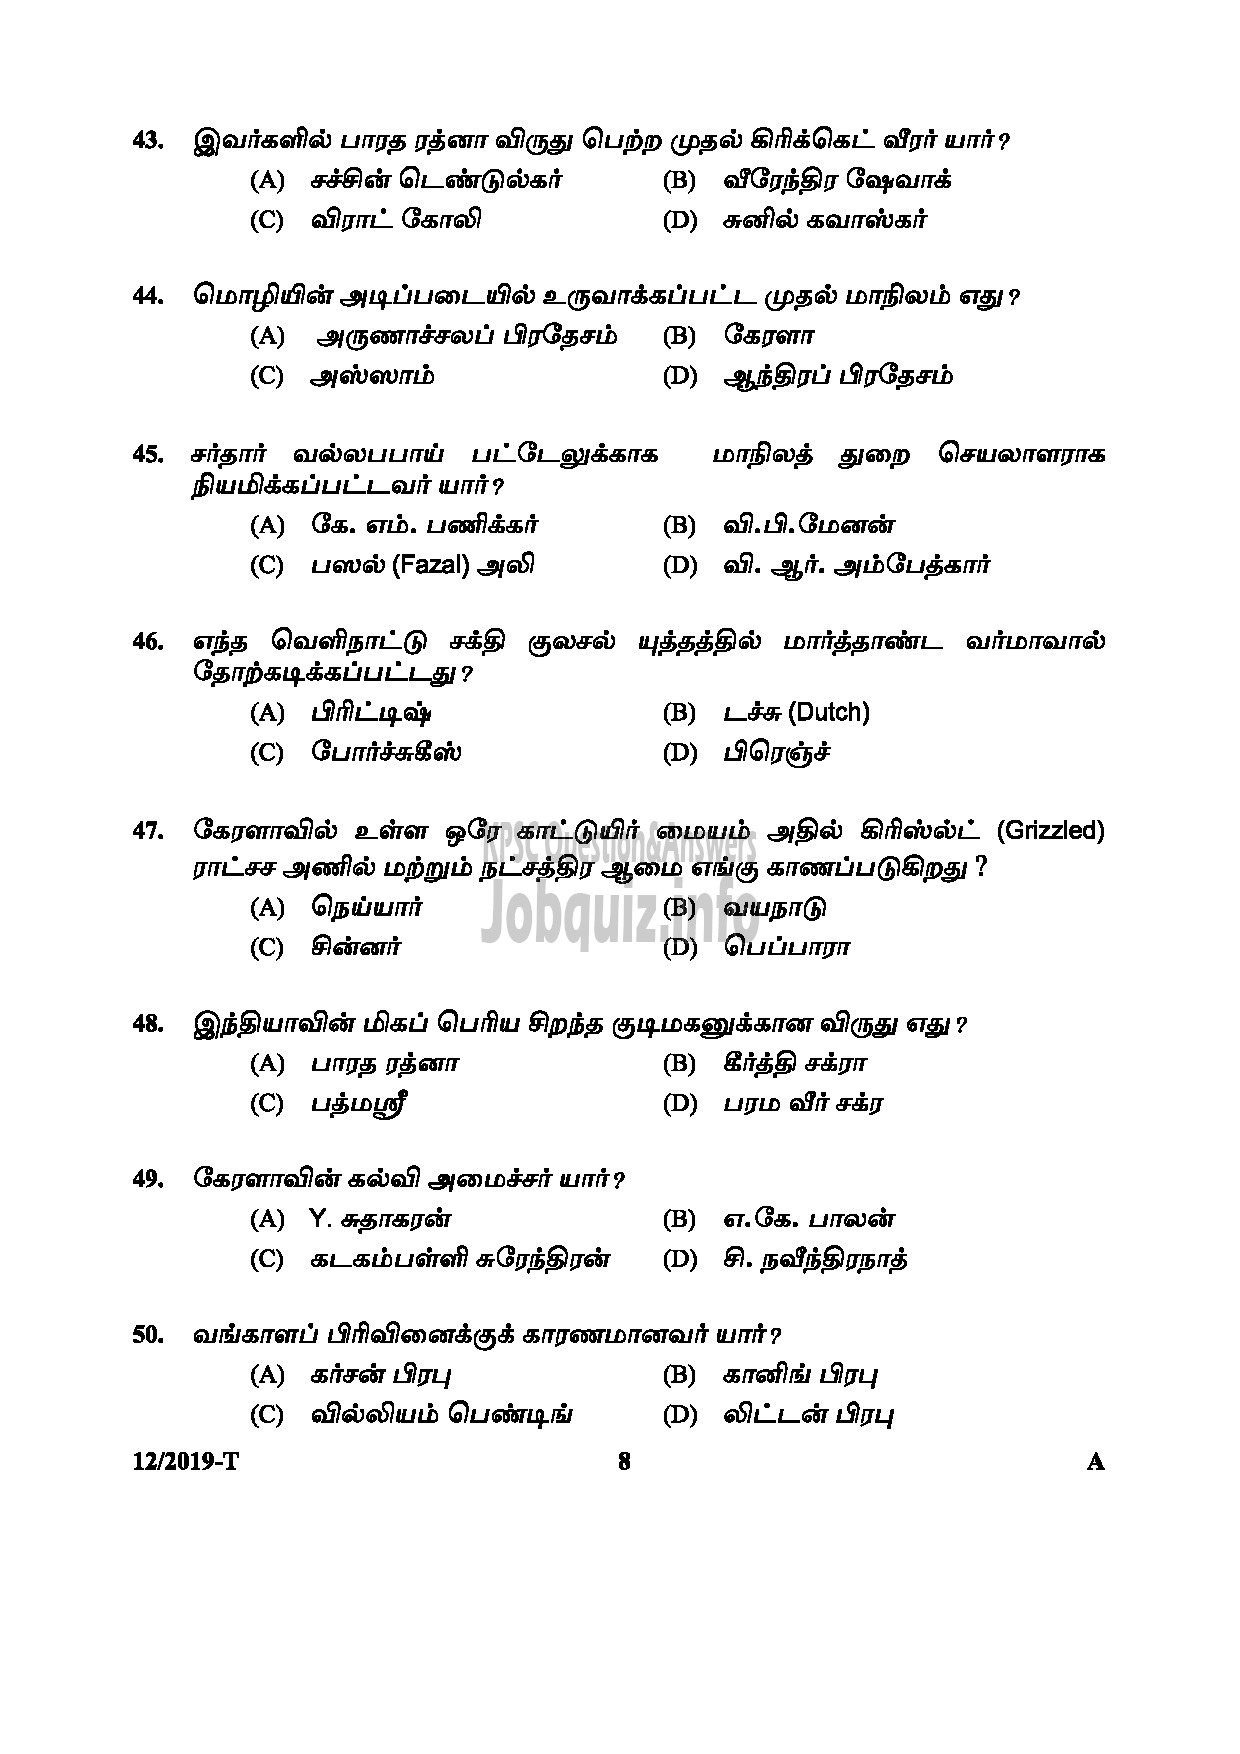 Kerala PSC Question Paper - L D CLERK ASSISTANT GR II KERALA KHADI VILLAGE INDUSTRIES BOARD NCC SAINIK WELFARE Tamil -8